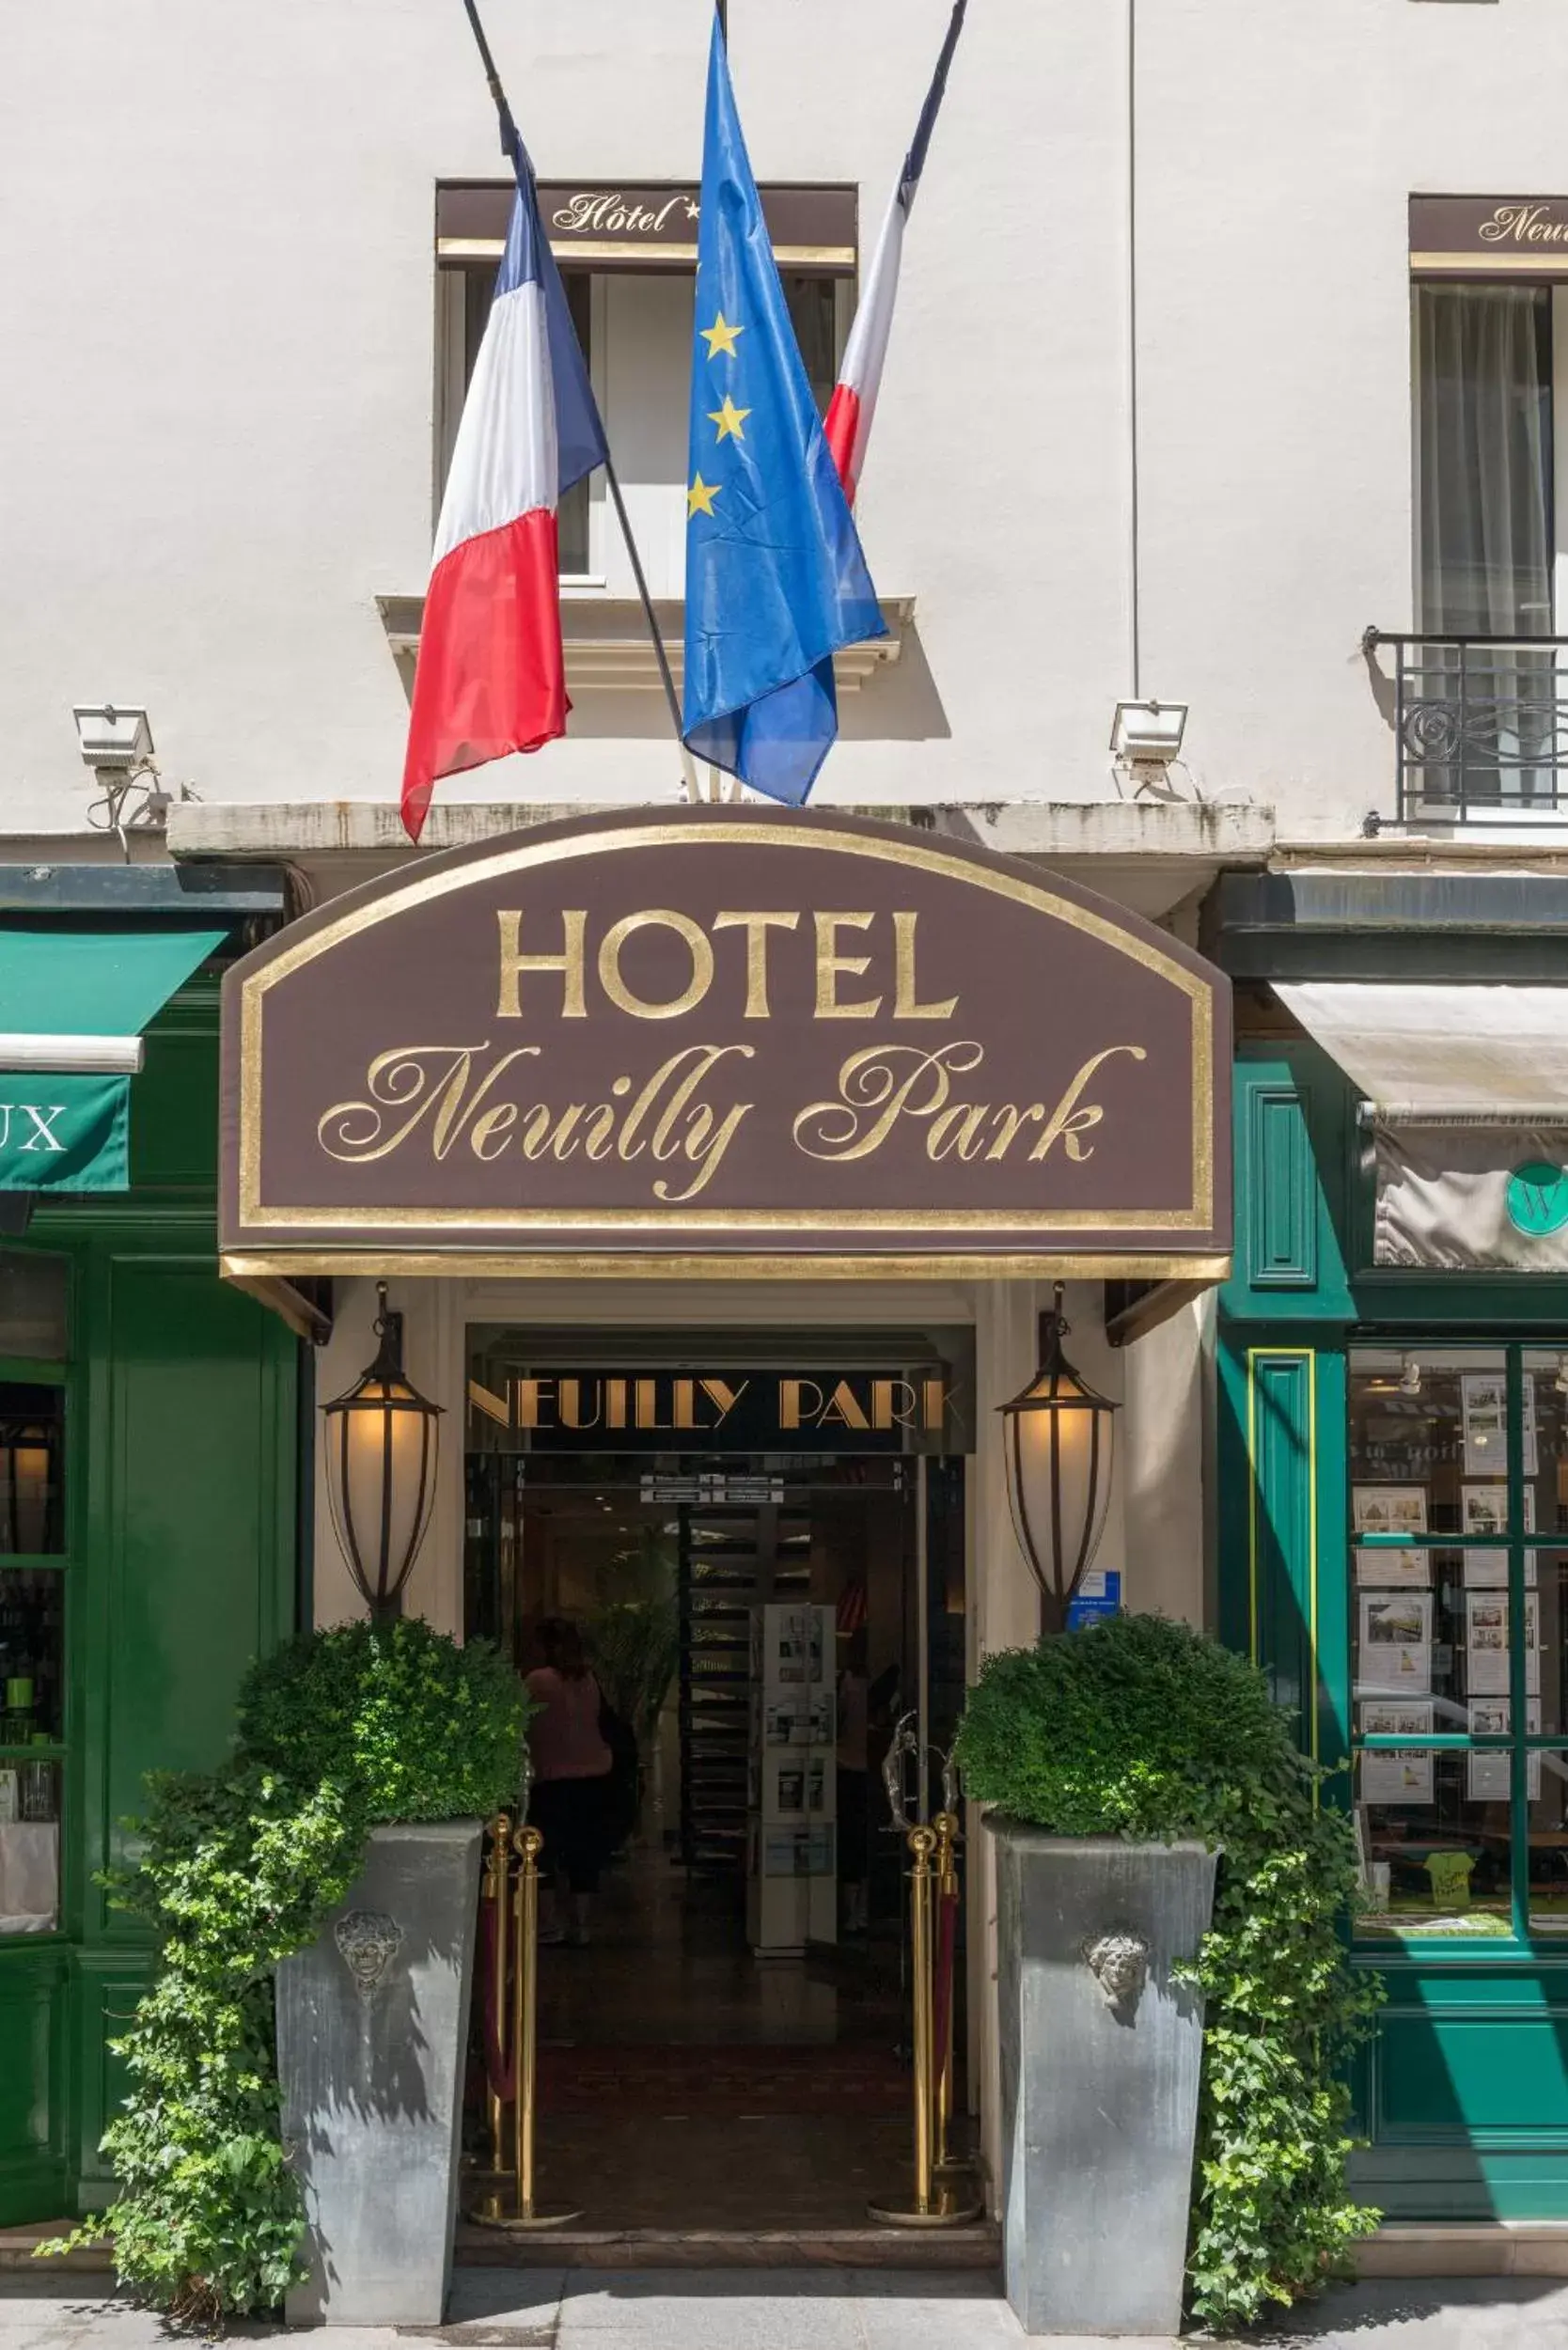 Facade/entrance in Neuilly Park Hotel